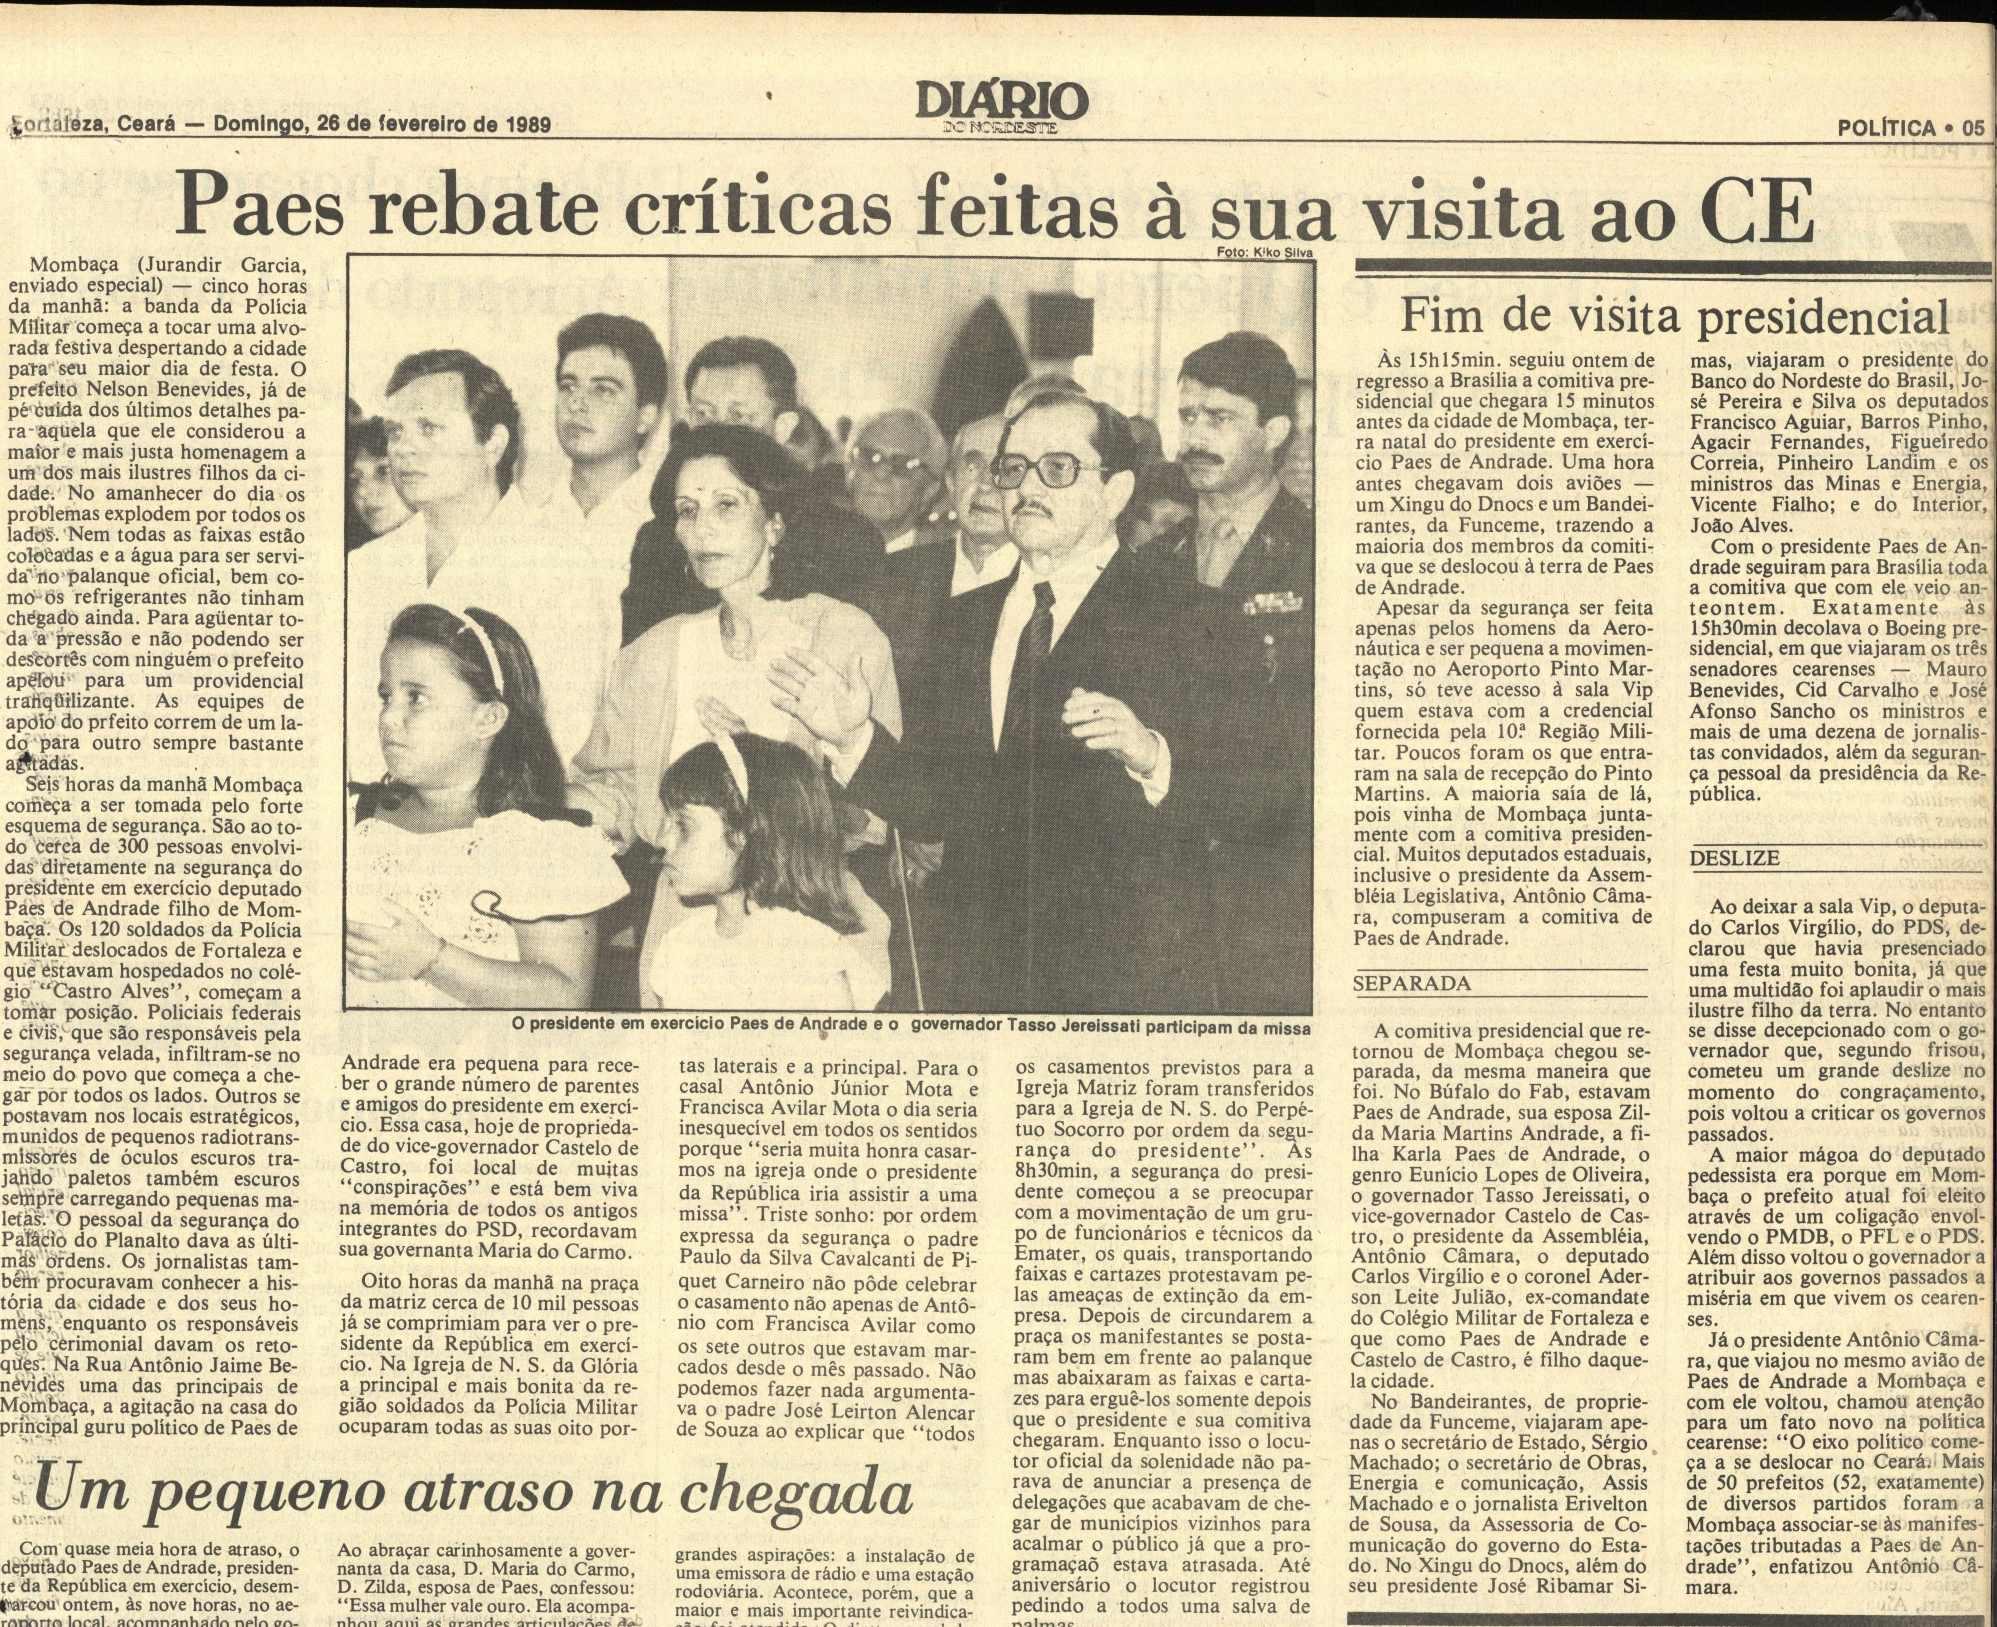 Reportagem de fevereiro de 1989 do Diário do Nordeste